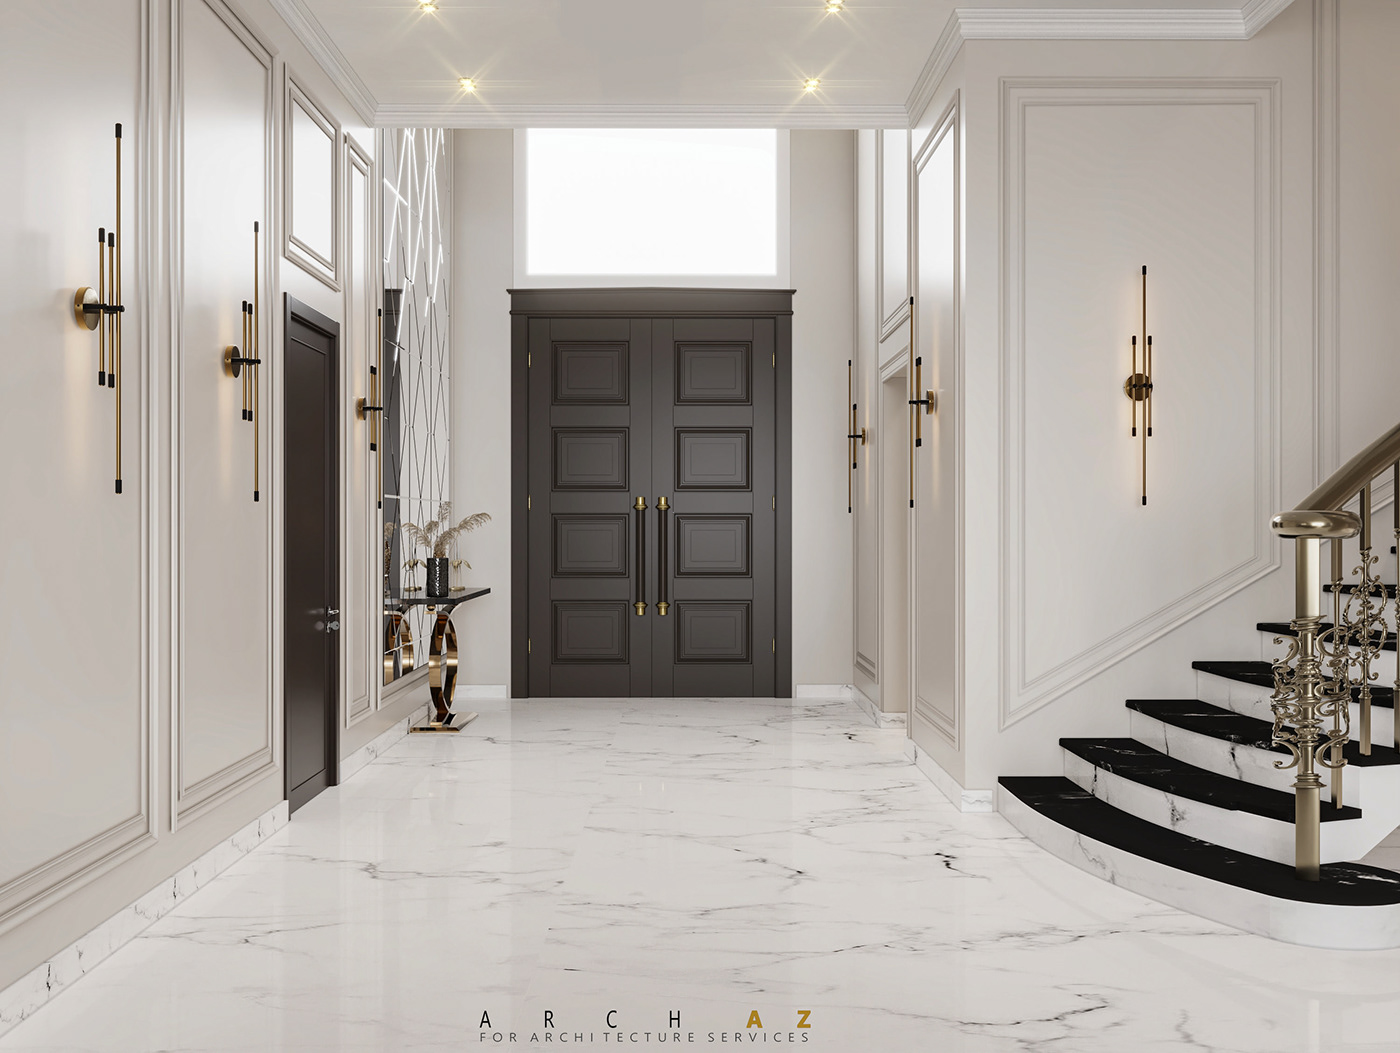 reception dining kitchen interior design  architecture visualization neoclassic luxury Villa classic interior design